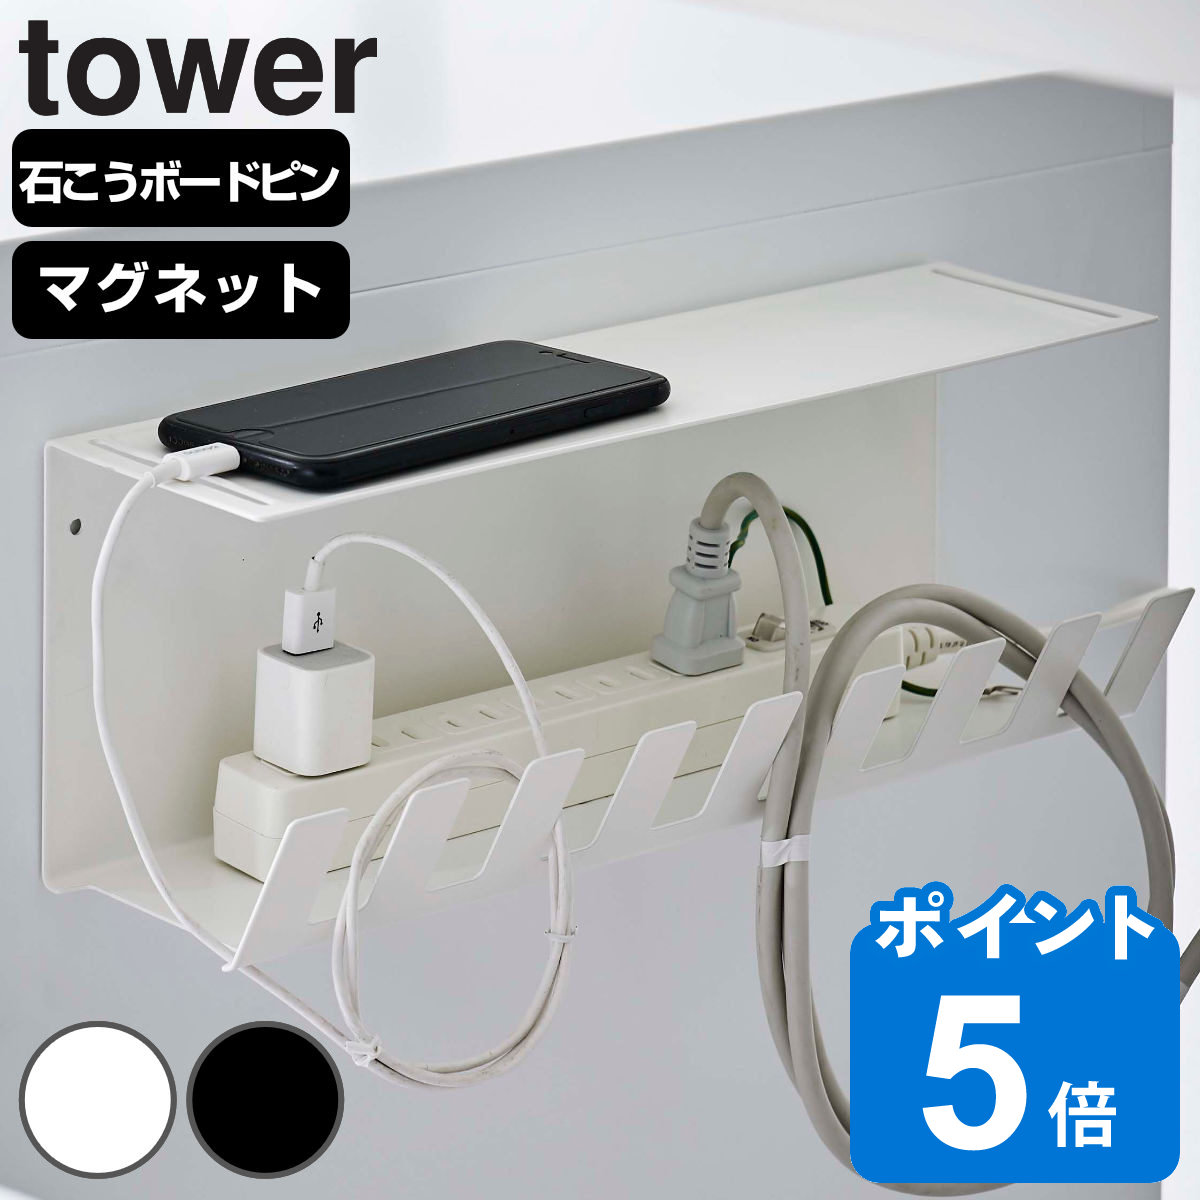 山崎実業 tower デスク下電源タップ収納ラック タワー